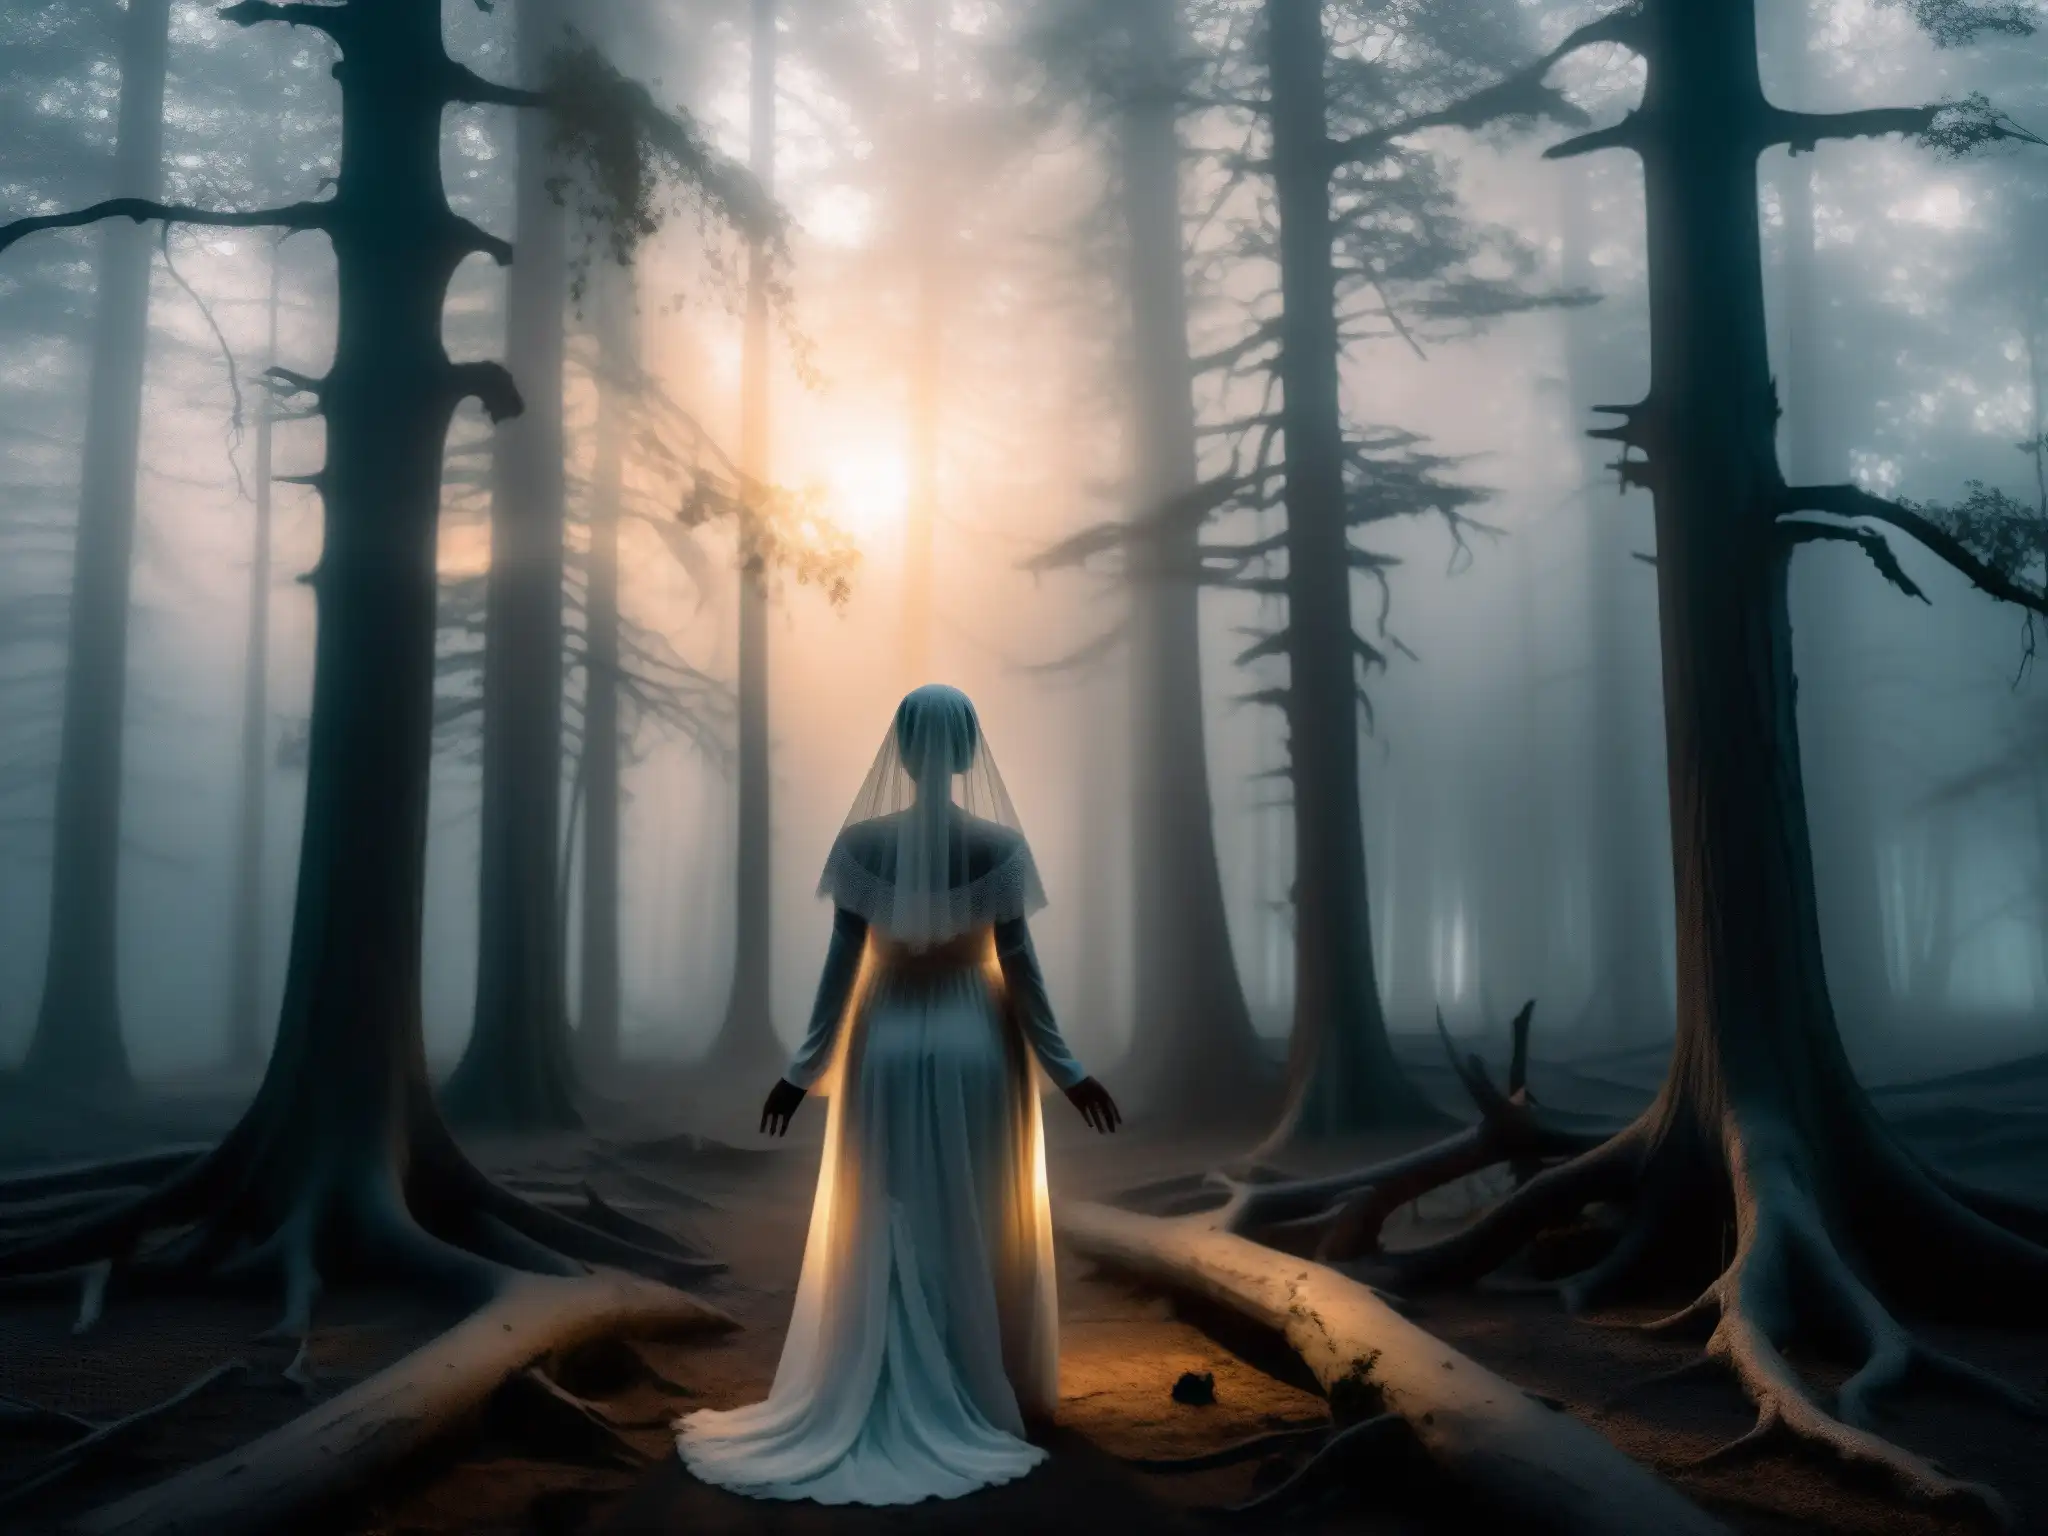 La Sayona mitología venezolana: Bosque brumoso al anochecer, figura fantasmal en vestido blanco y velo, irradiando una luz sobrenatural